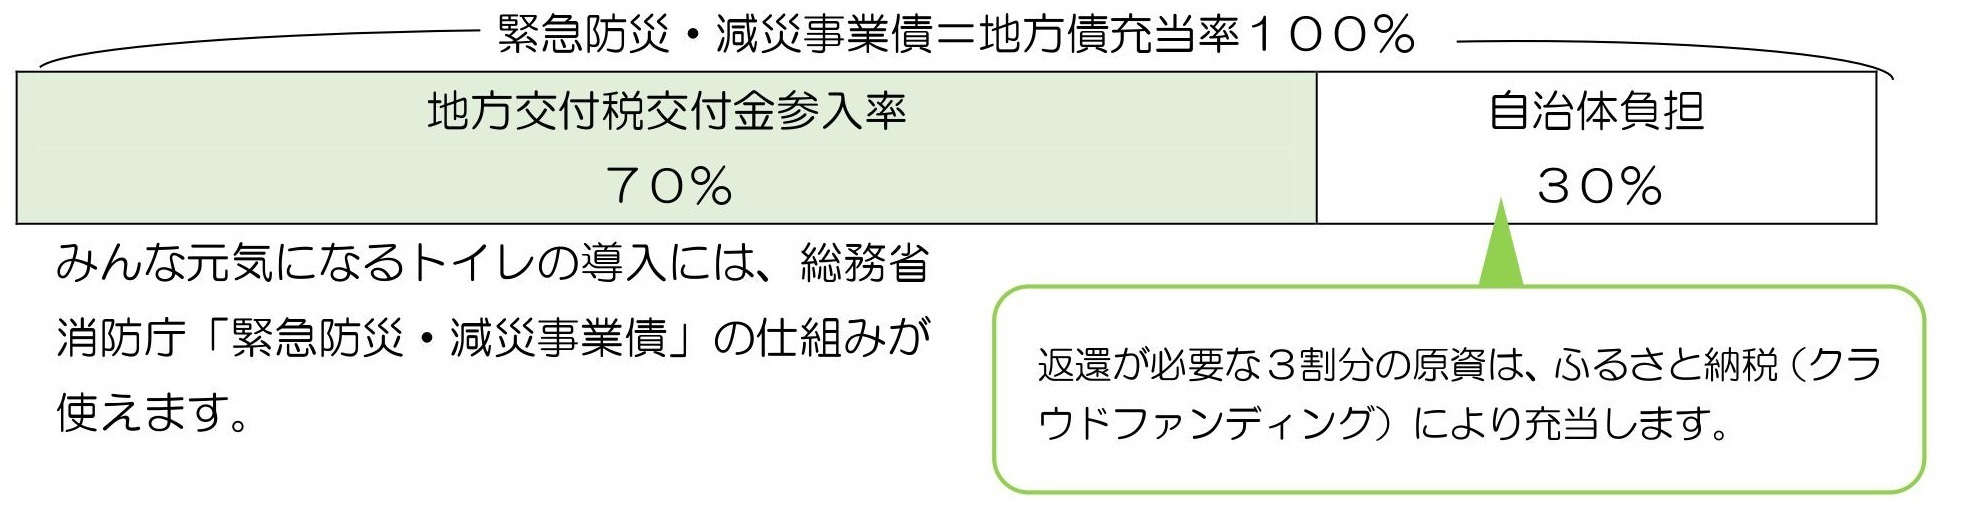 緊急減災・防災事業債の利用.jpg